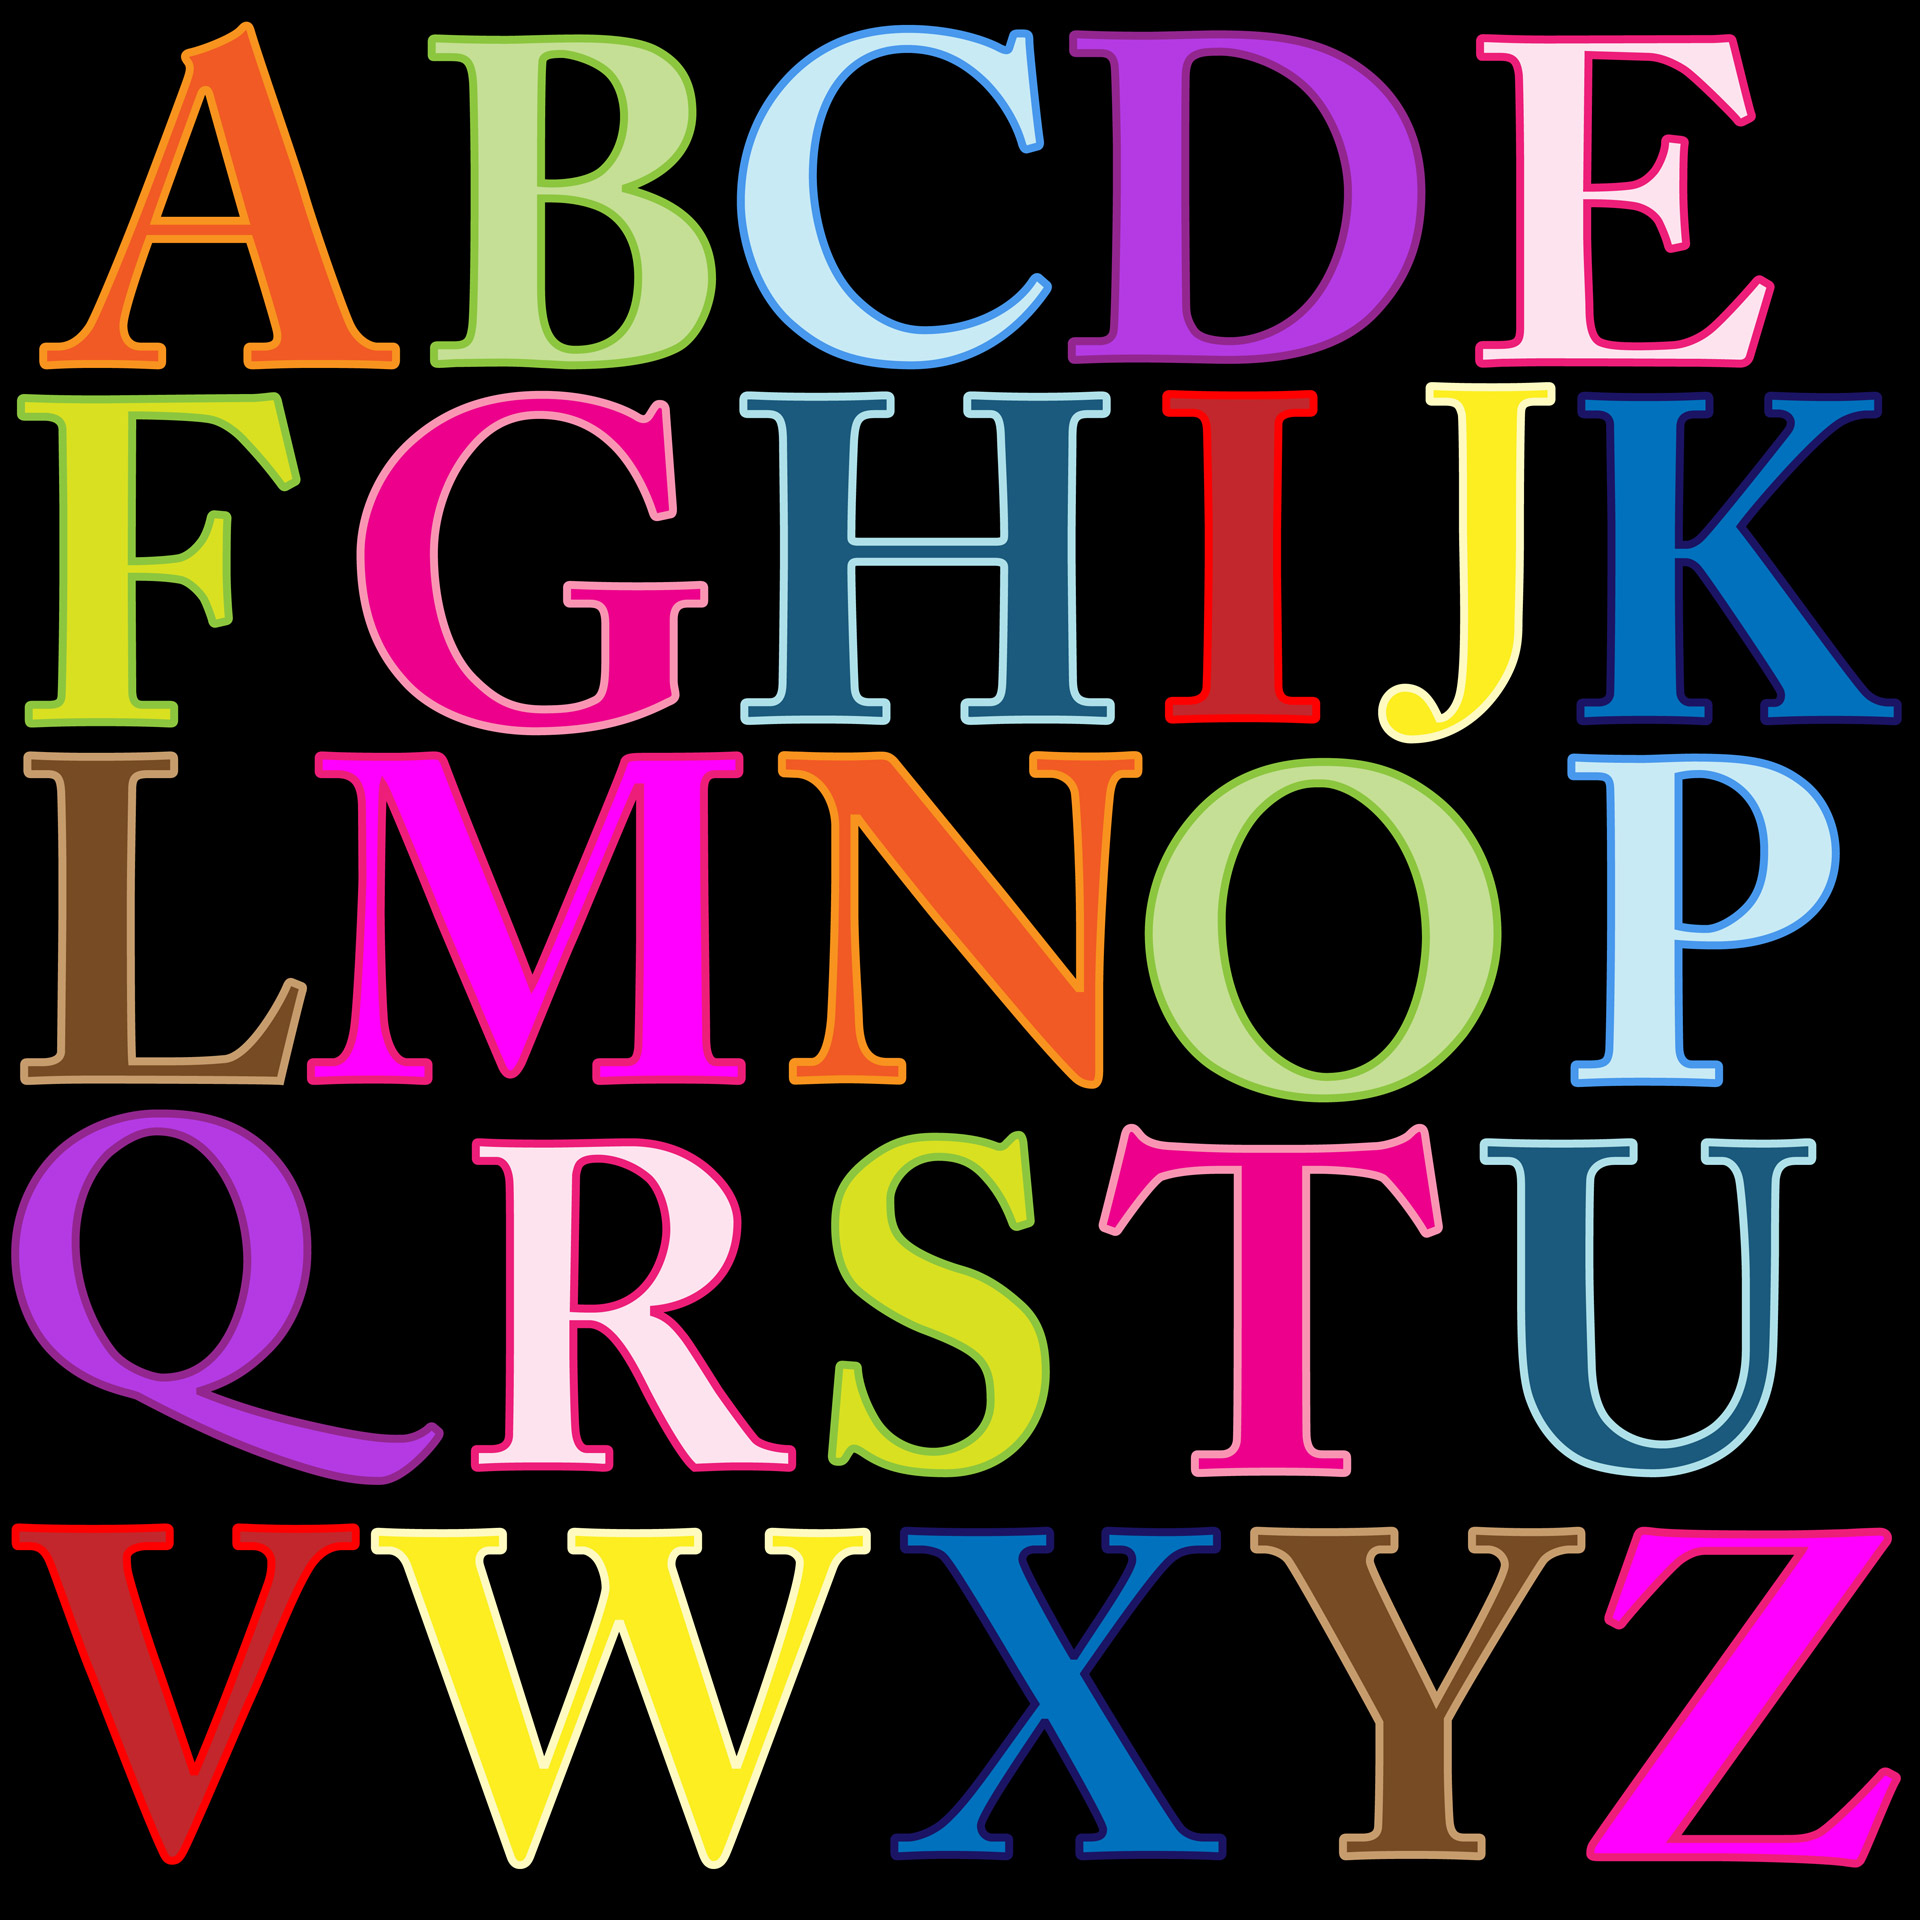 free clip art large alphabet letters - photo #18